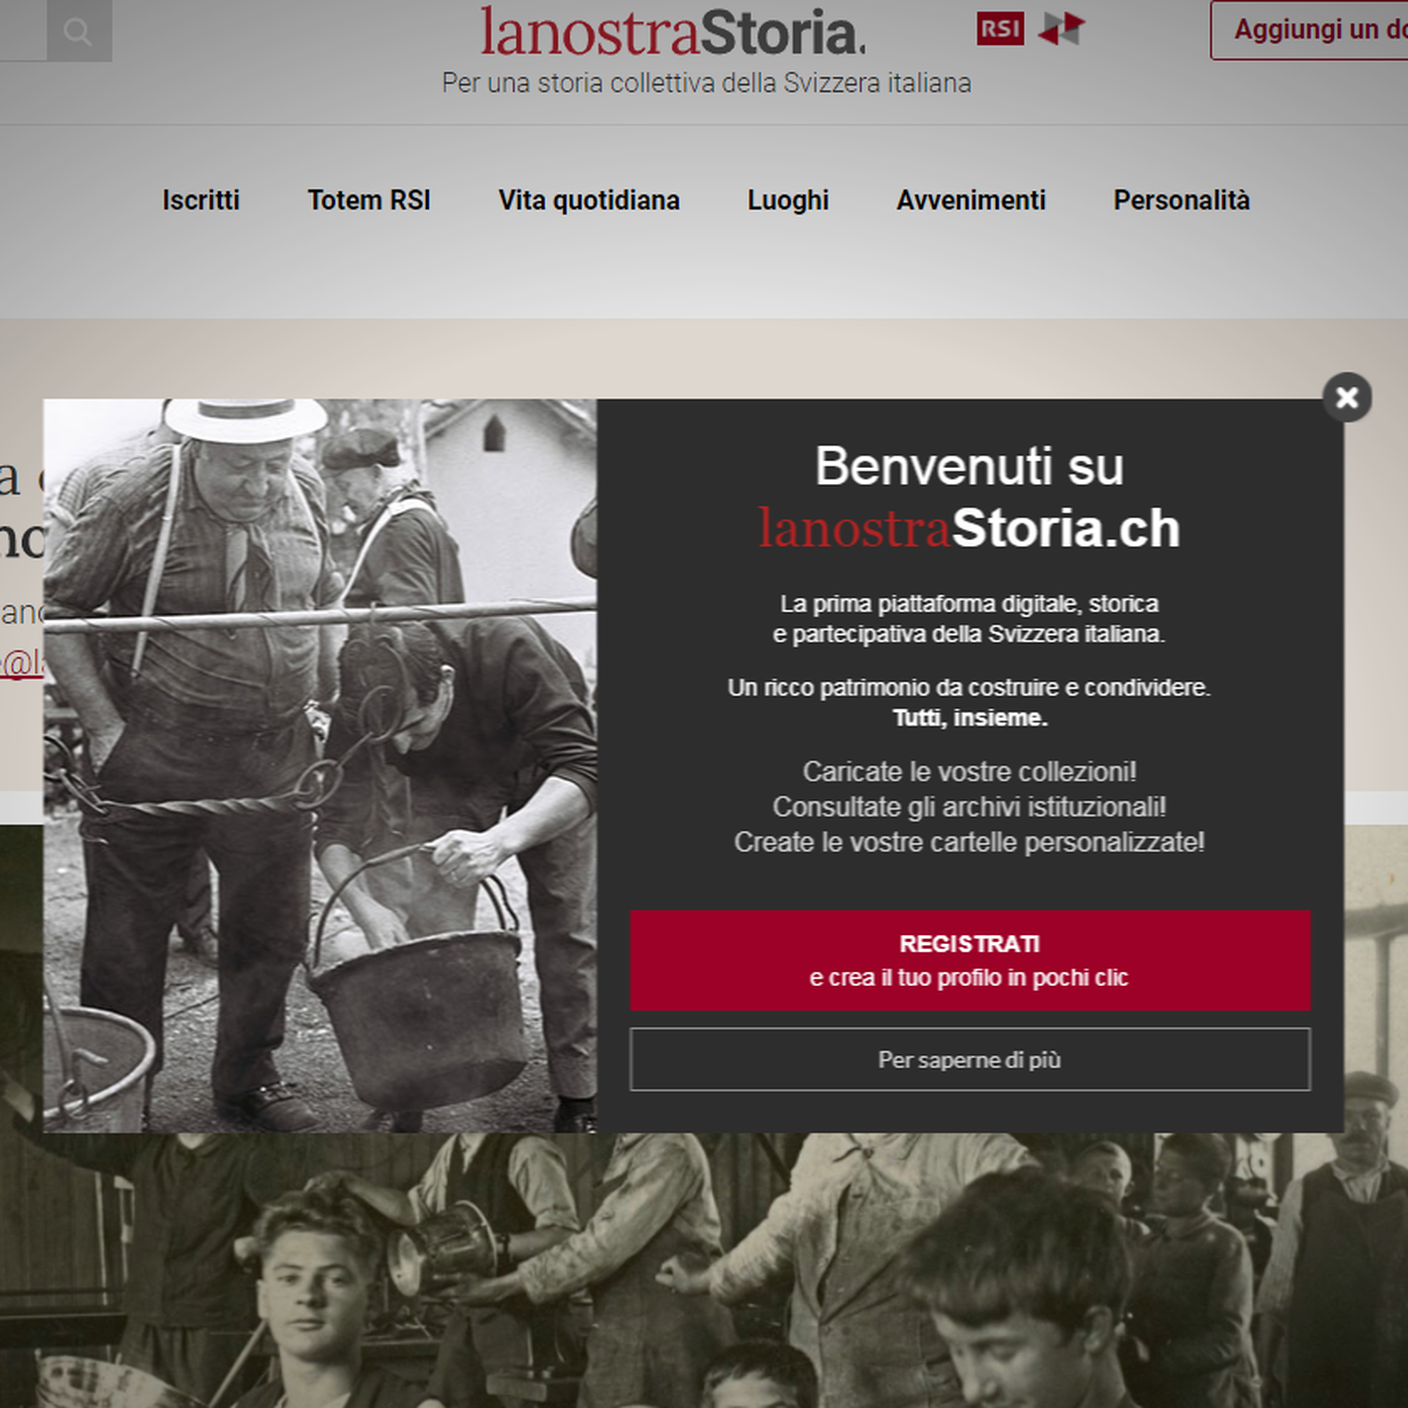 La homepage lanostraStoria.ch 